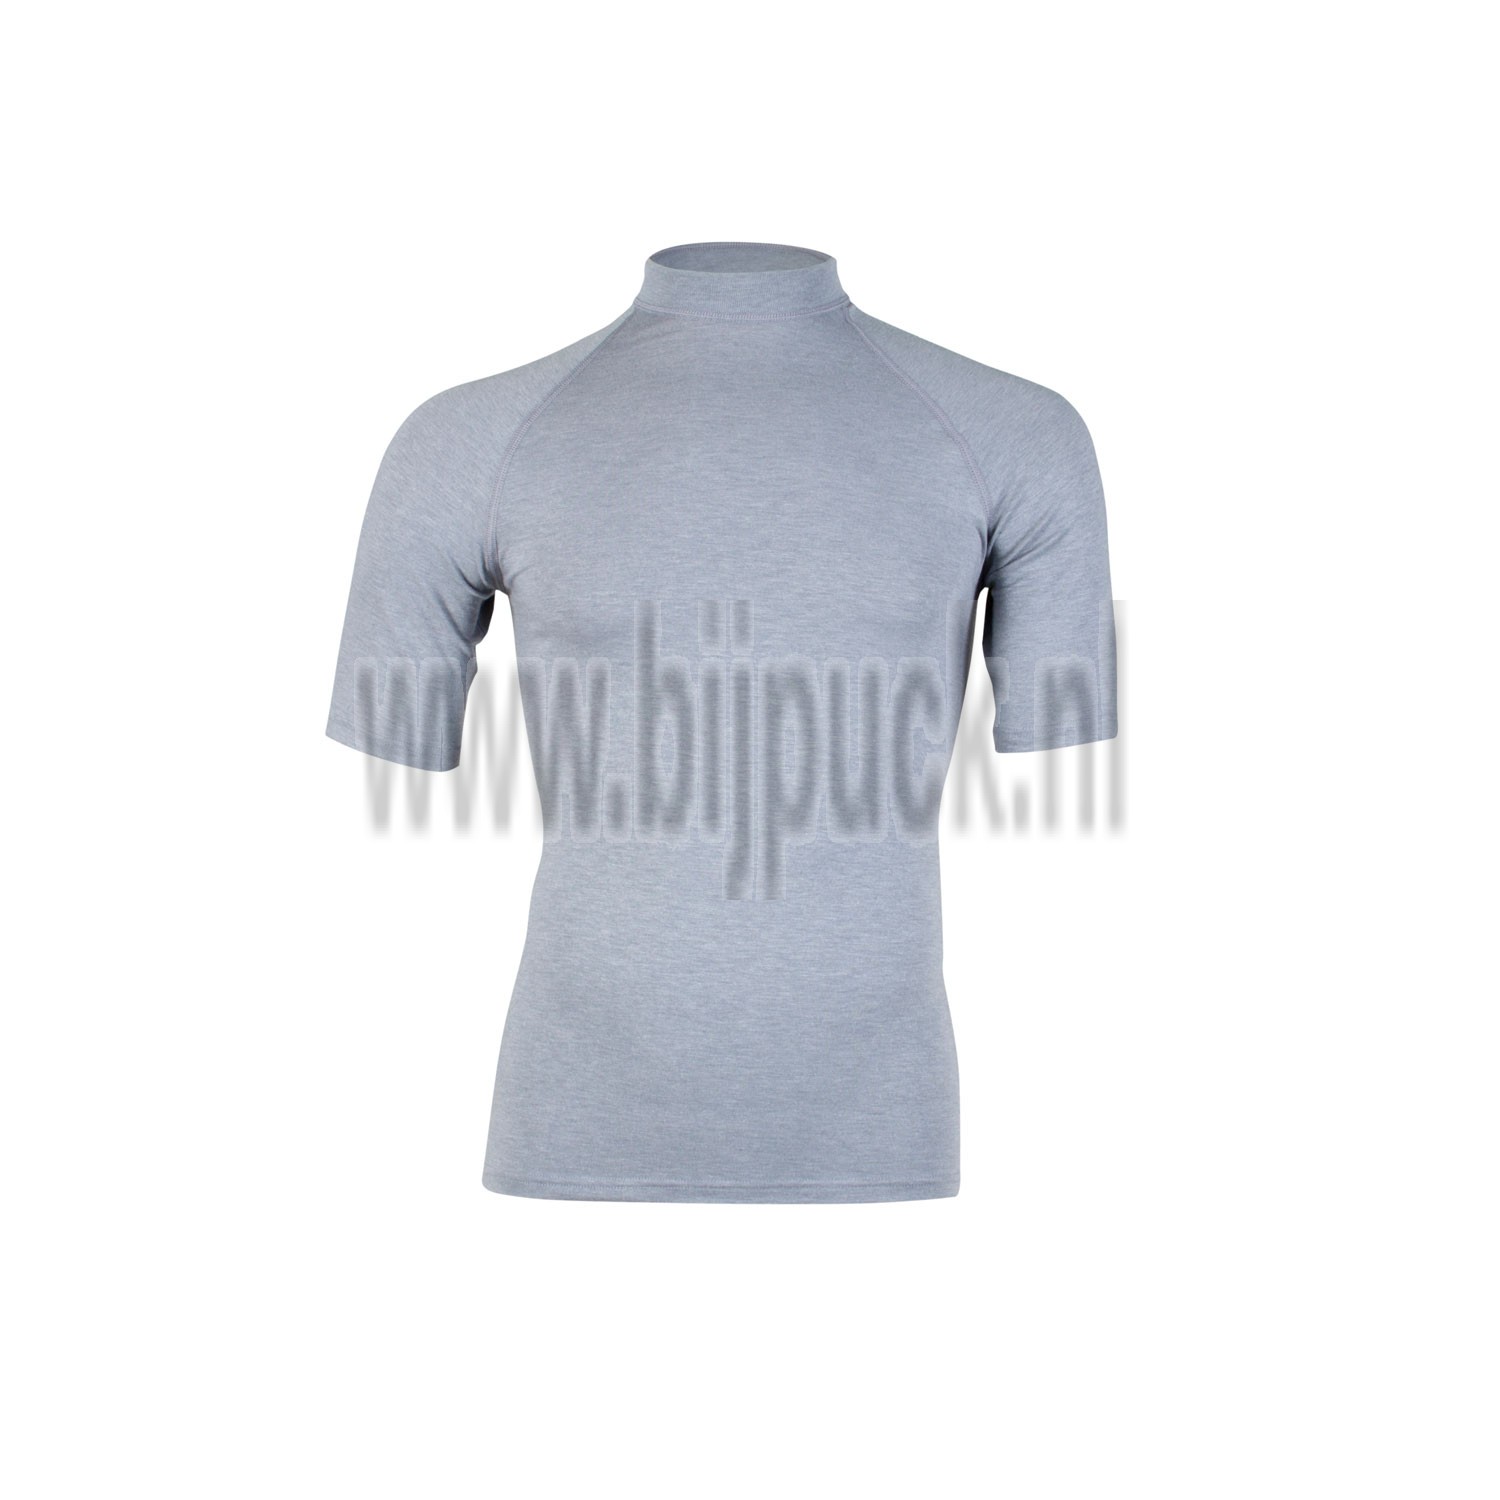 RJ Bodywear, thermo t-shirt